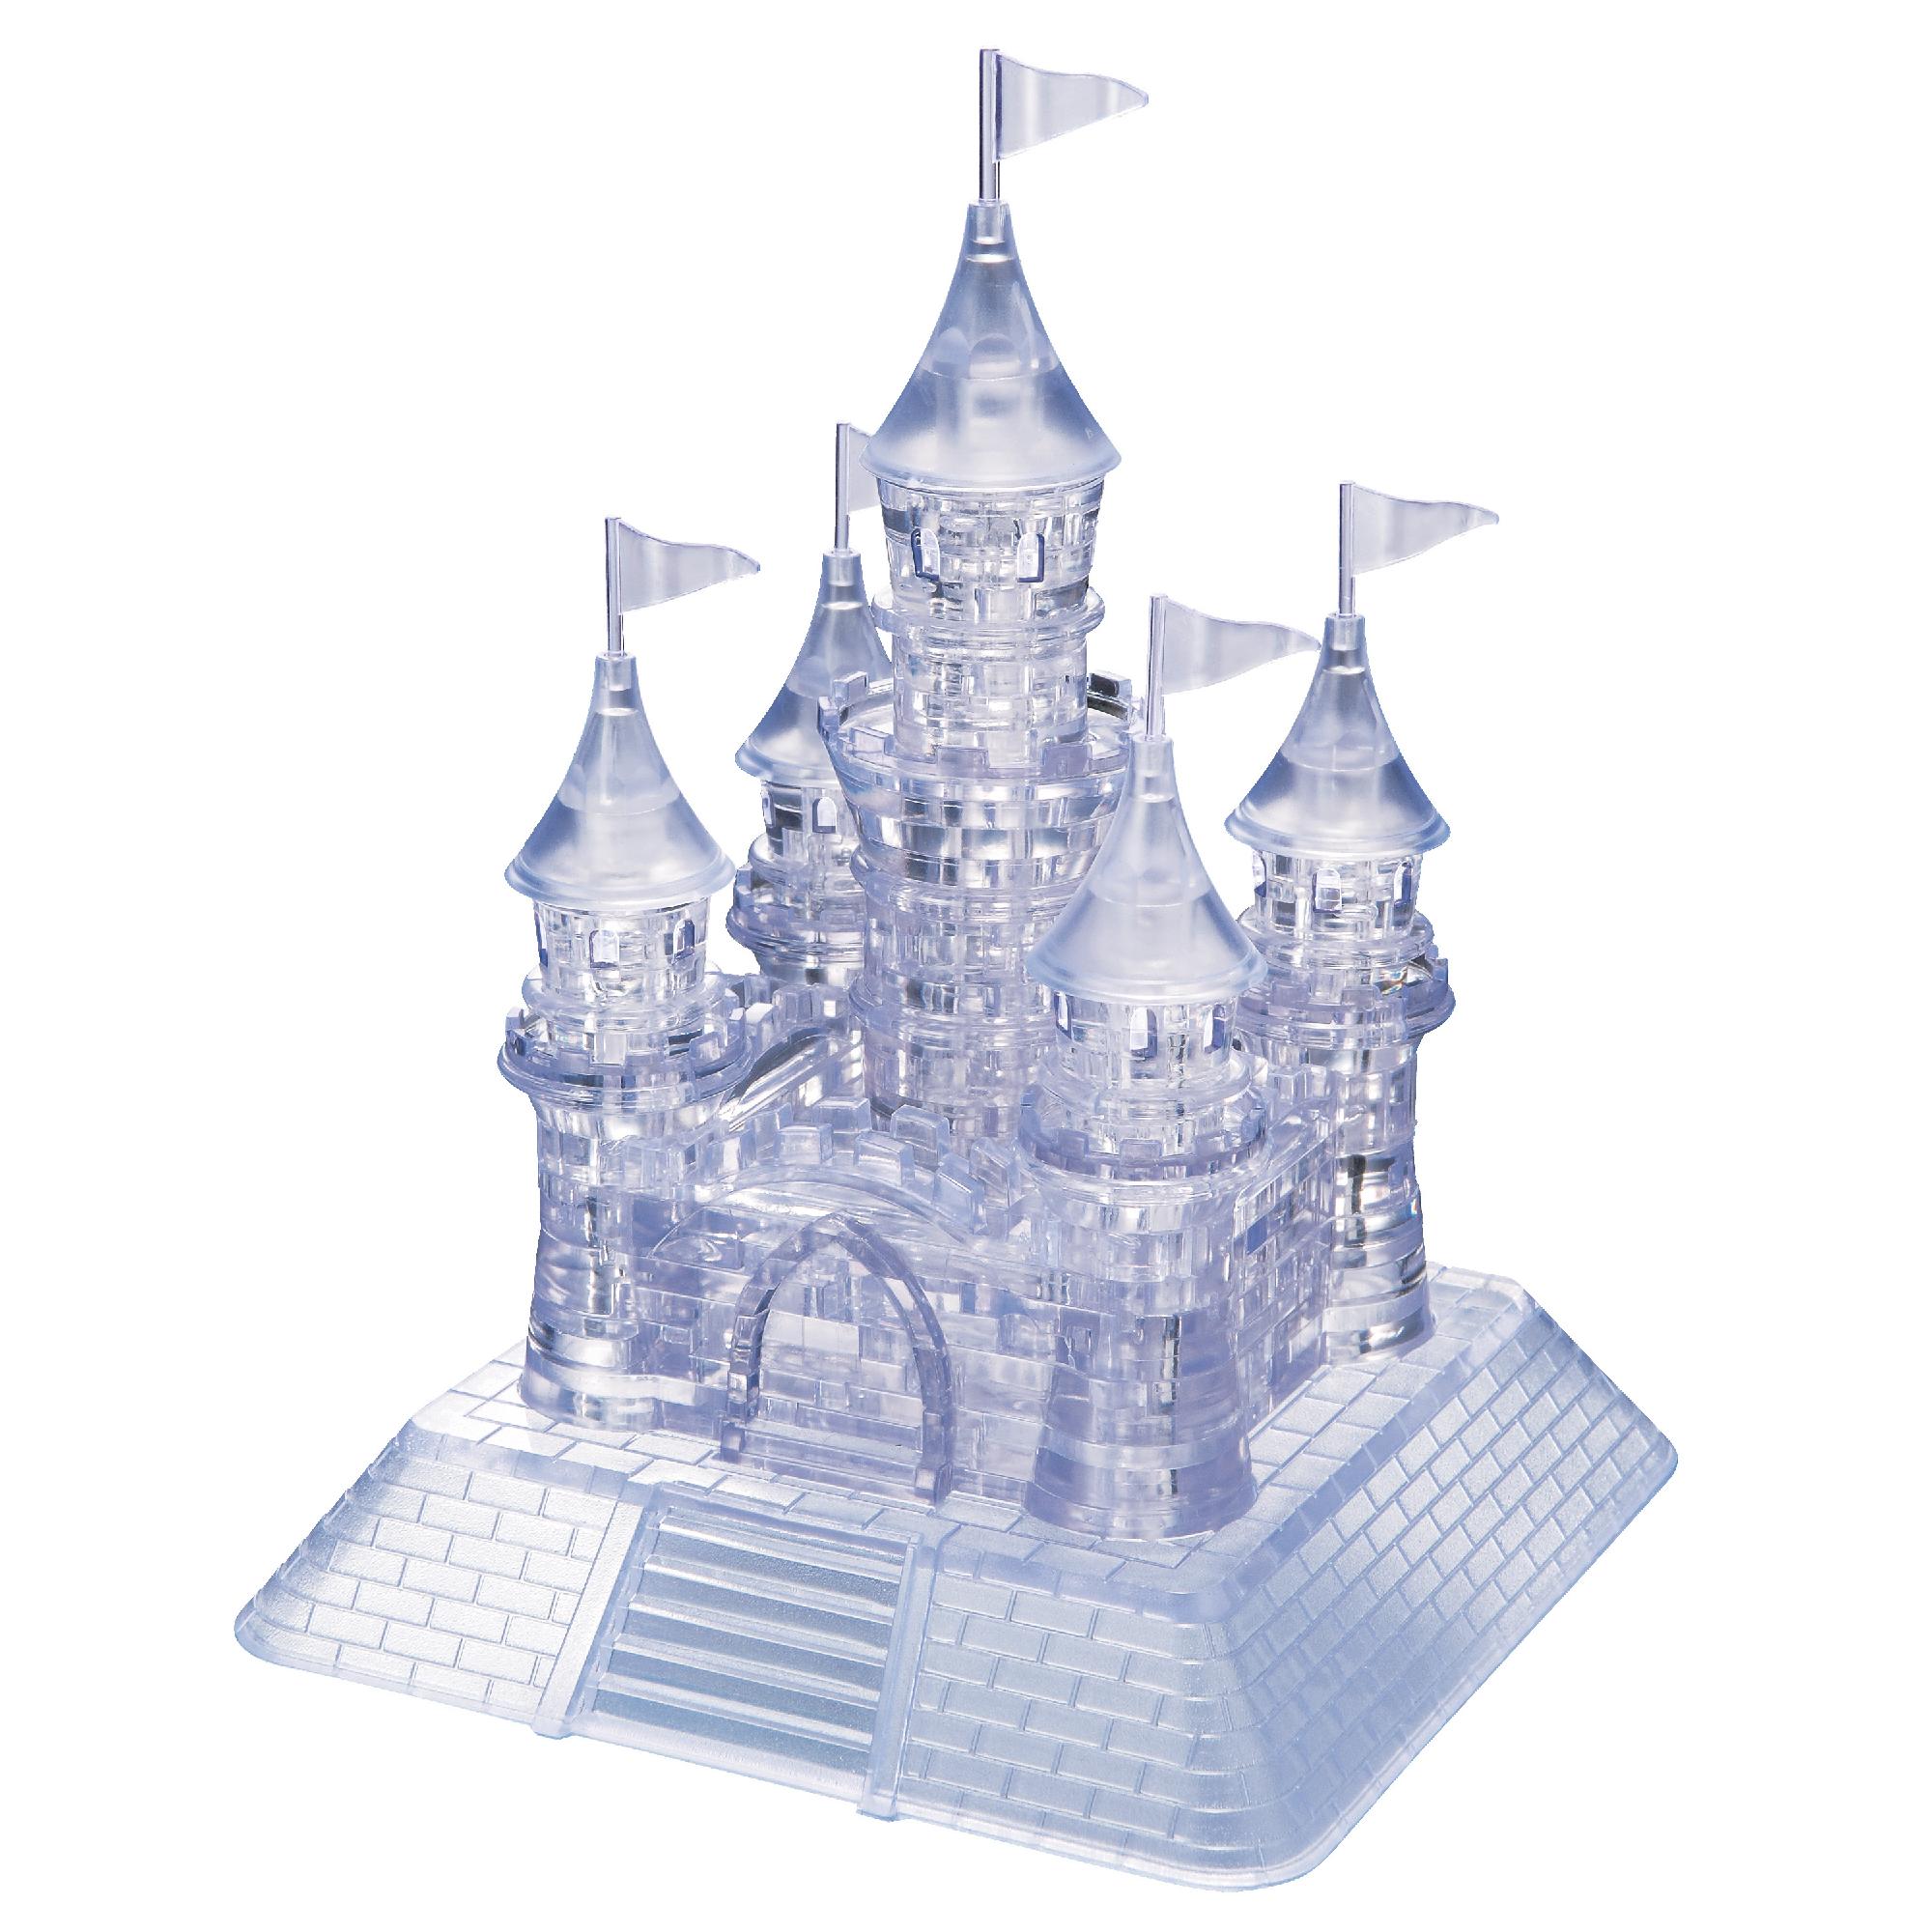 Bepuzzled 3D Crystal Puzzle - Castle: 105 Pcs